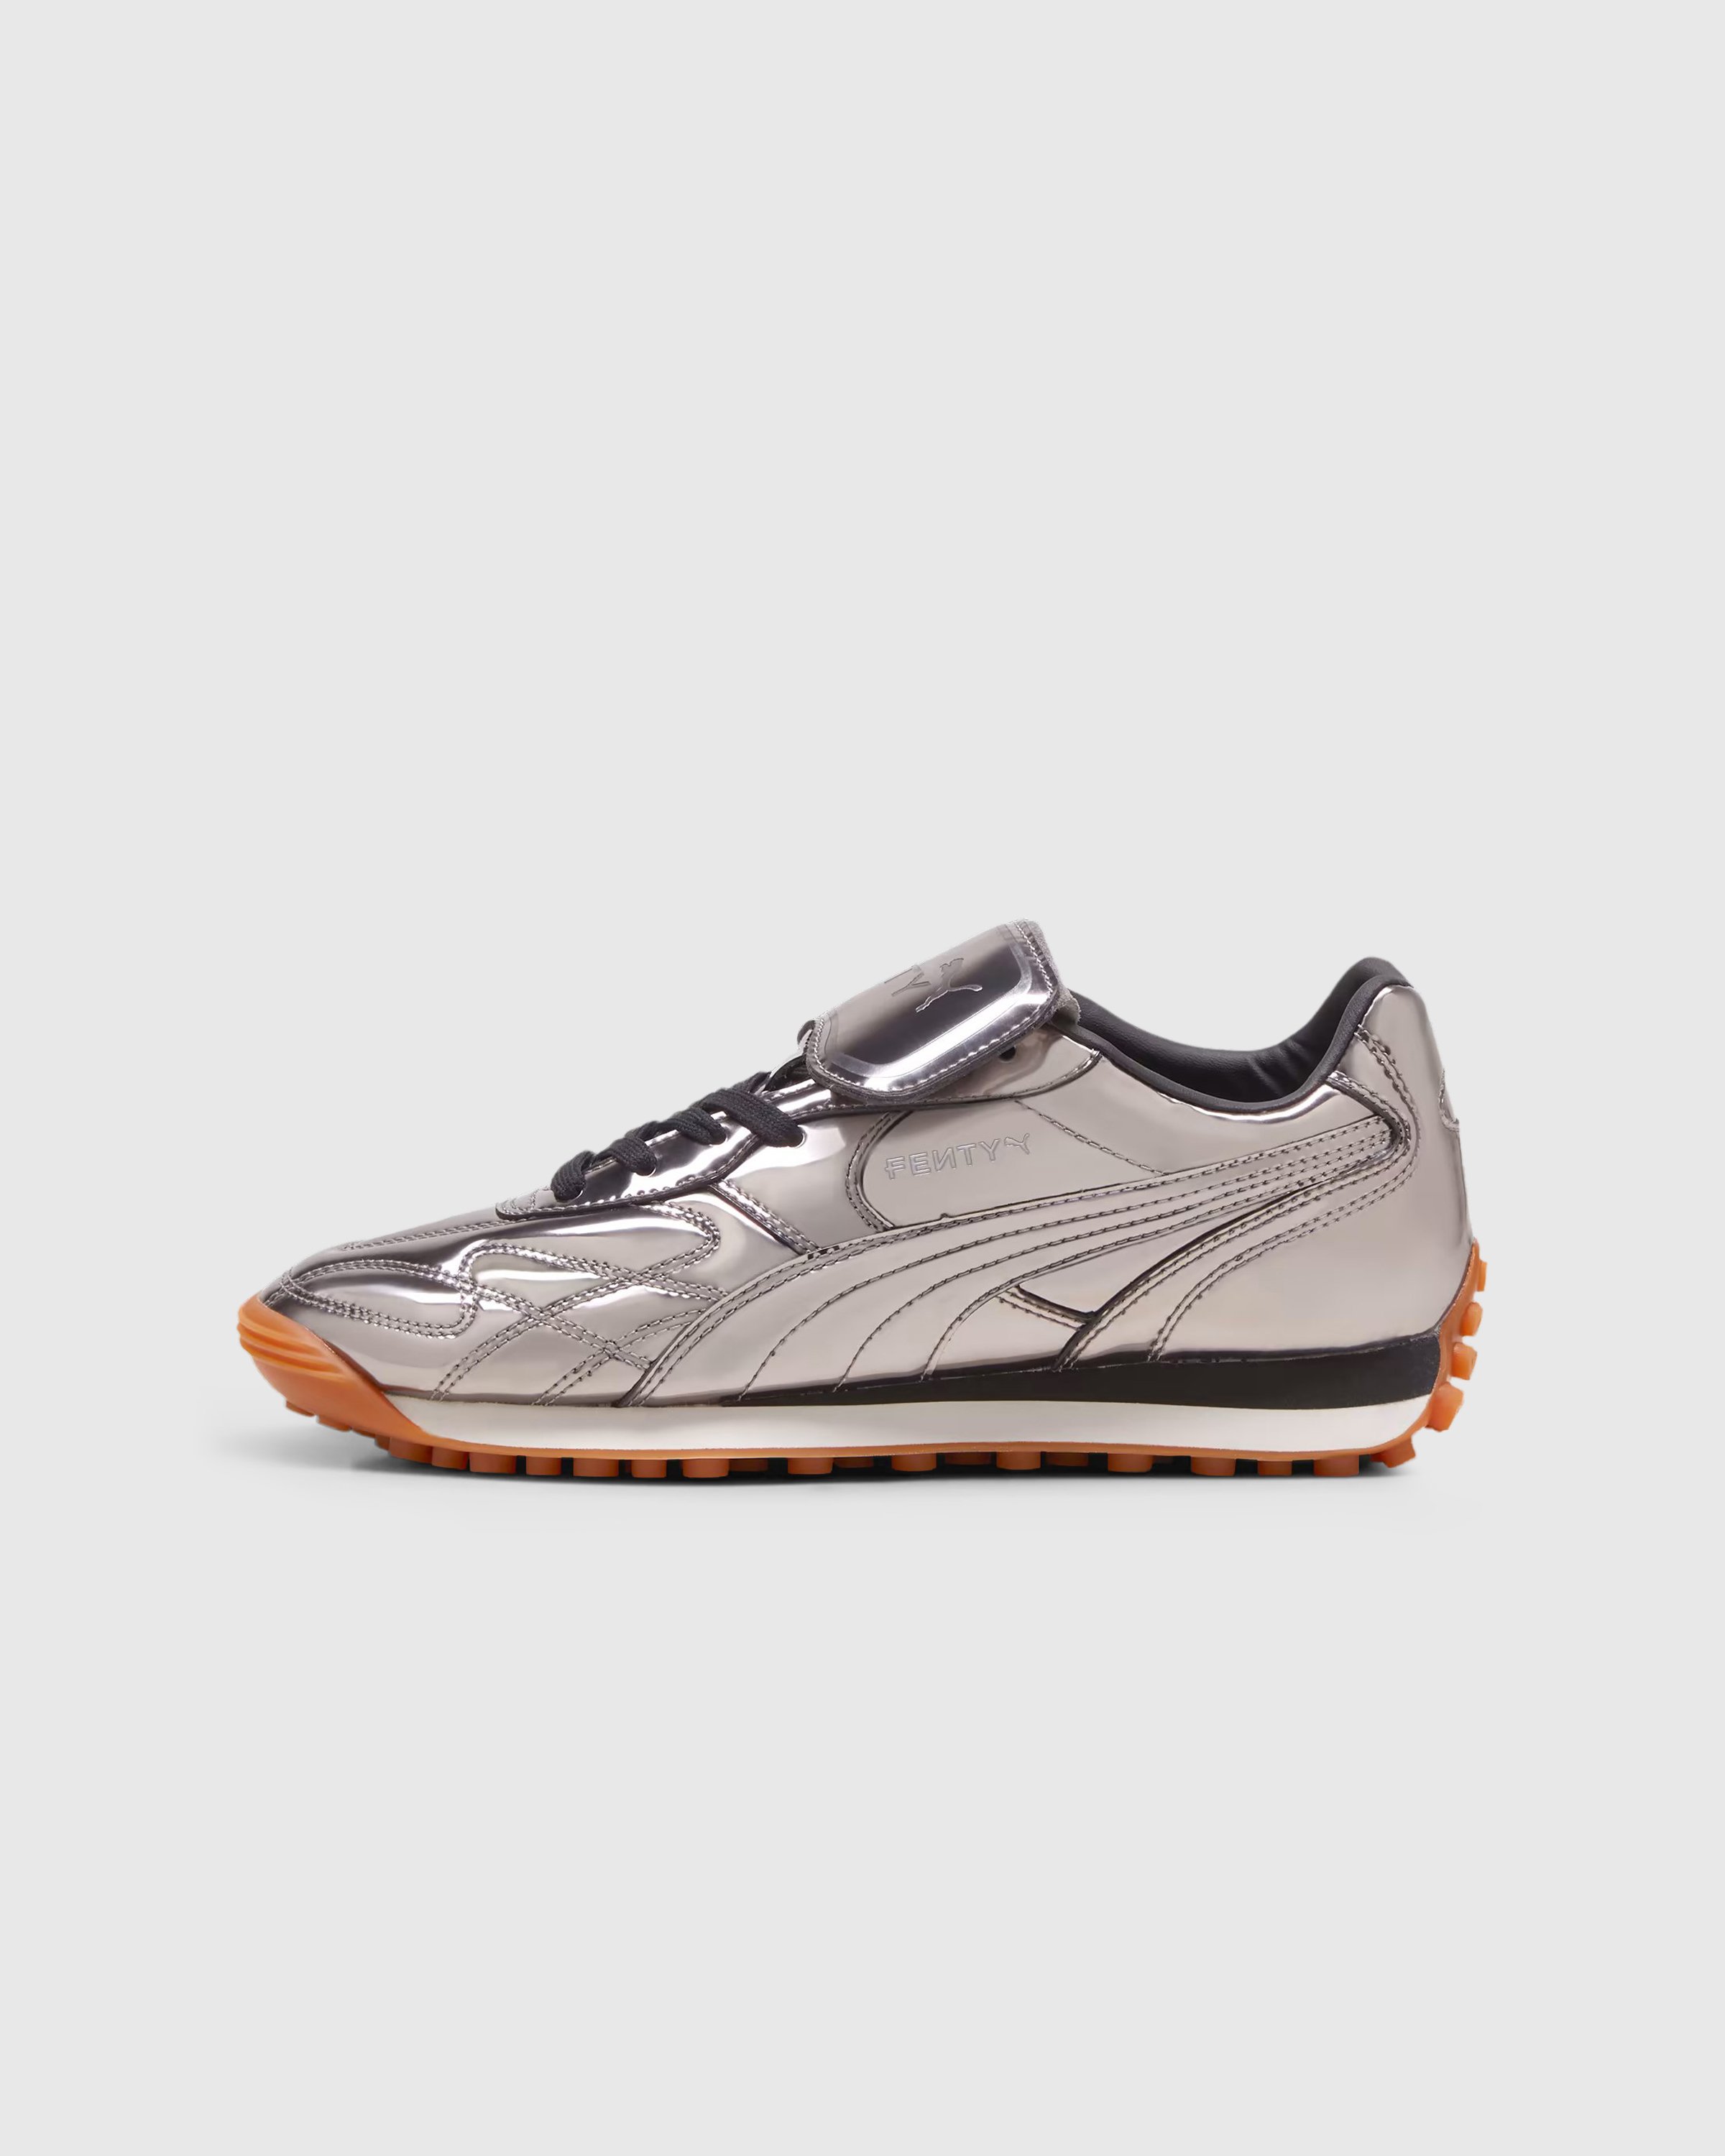 Fenty x Puma - Avanti C Aged Silver - Footwear - Silver - Image 2